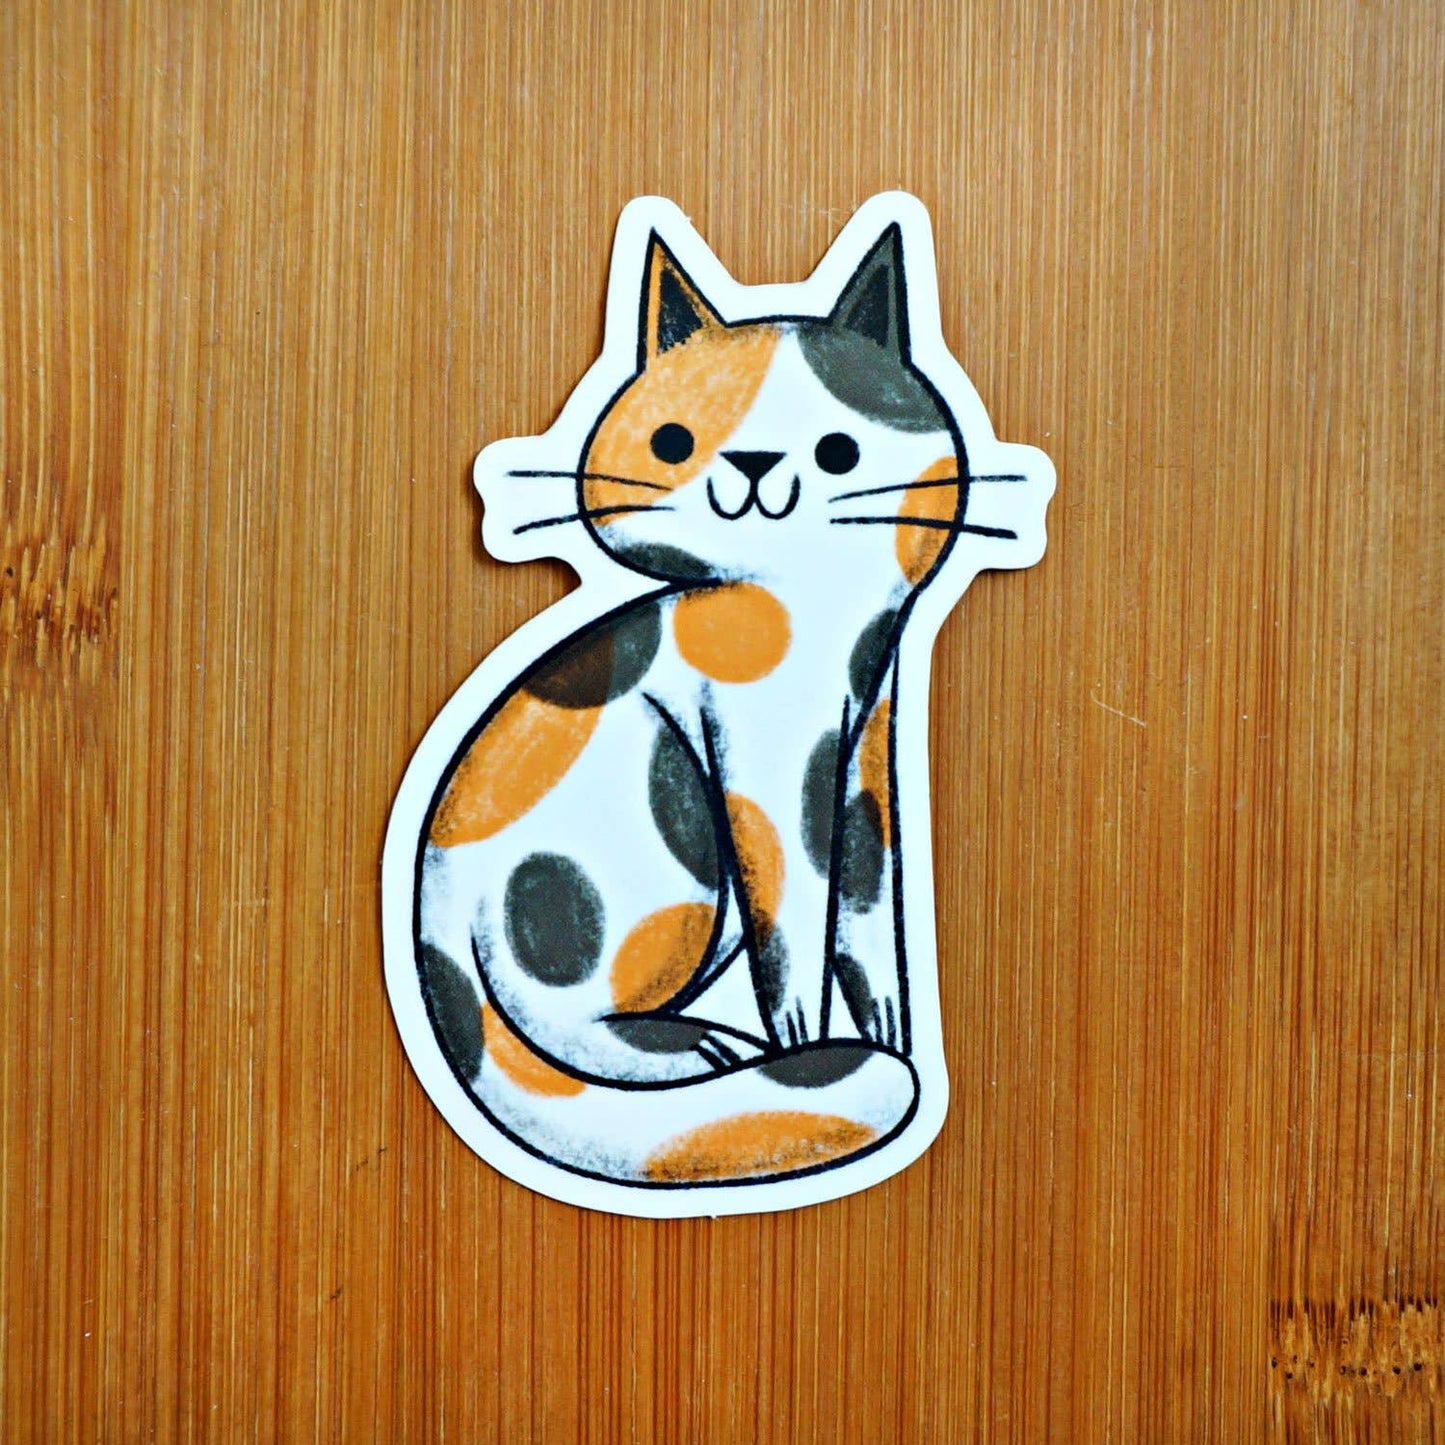 Suzy Q Calico Cat Sticker